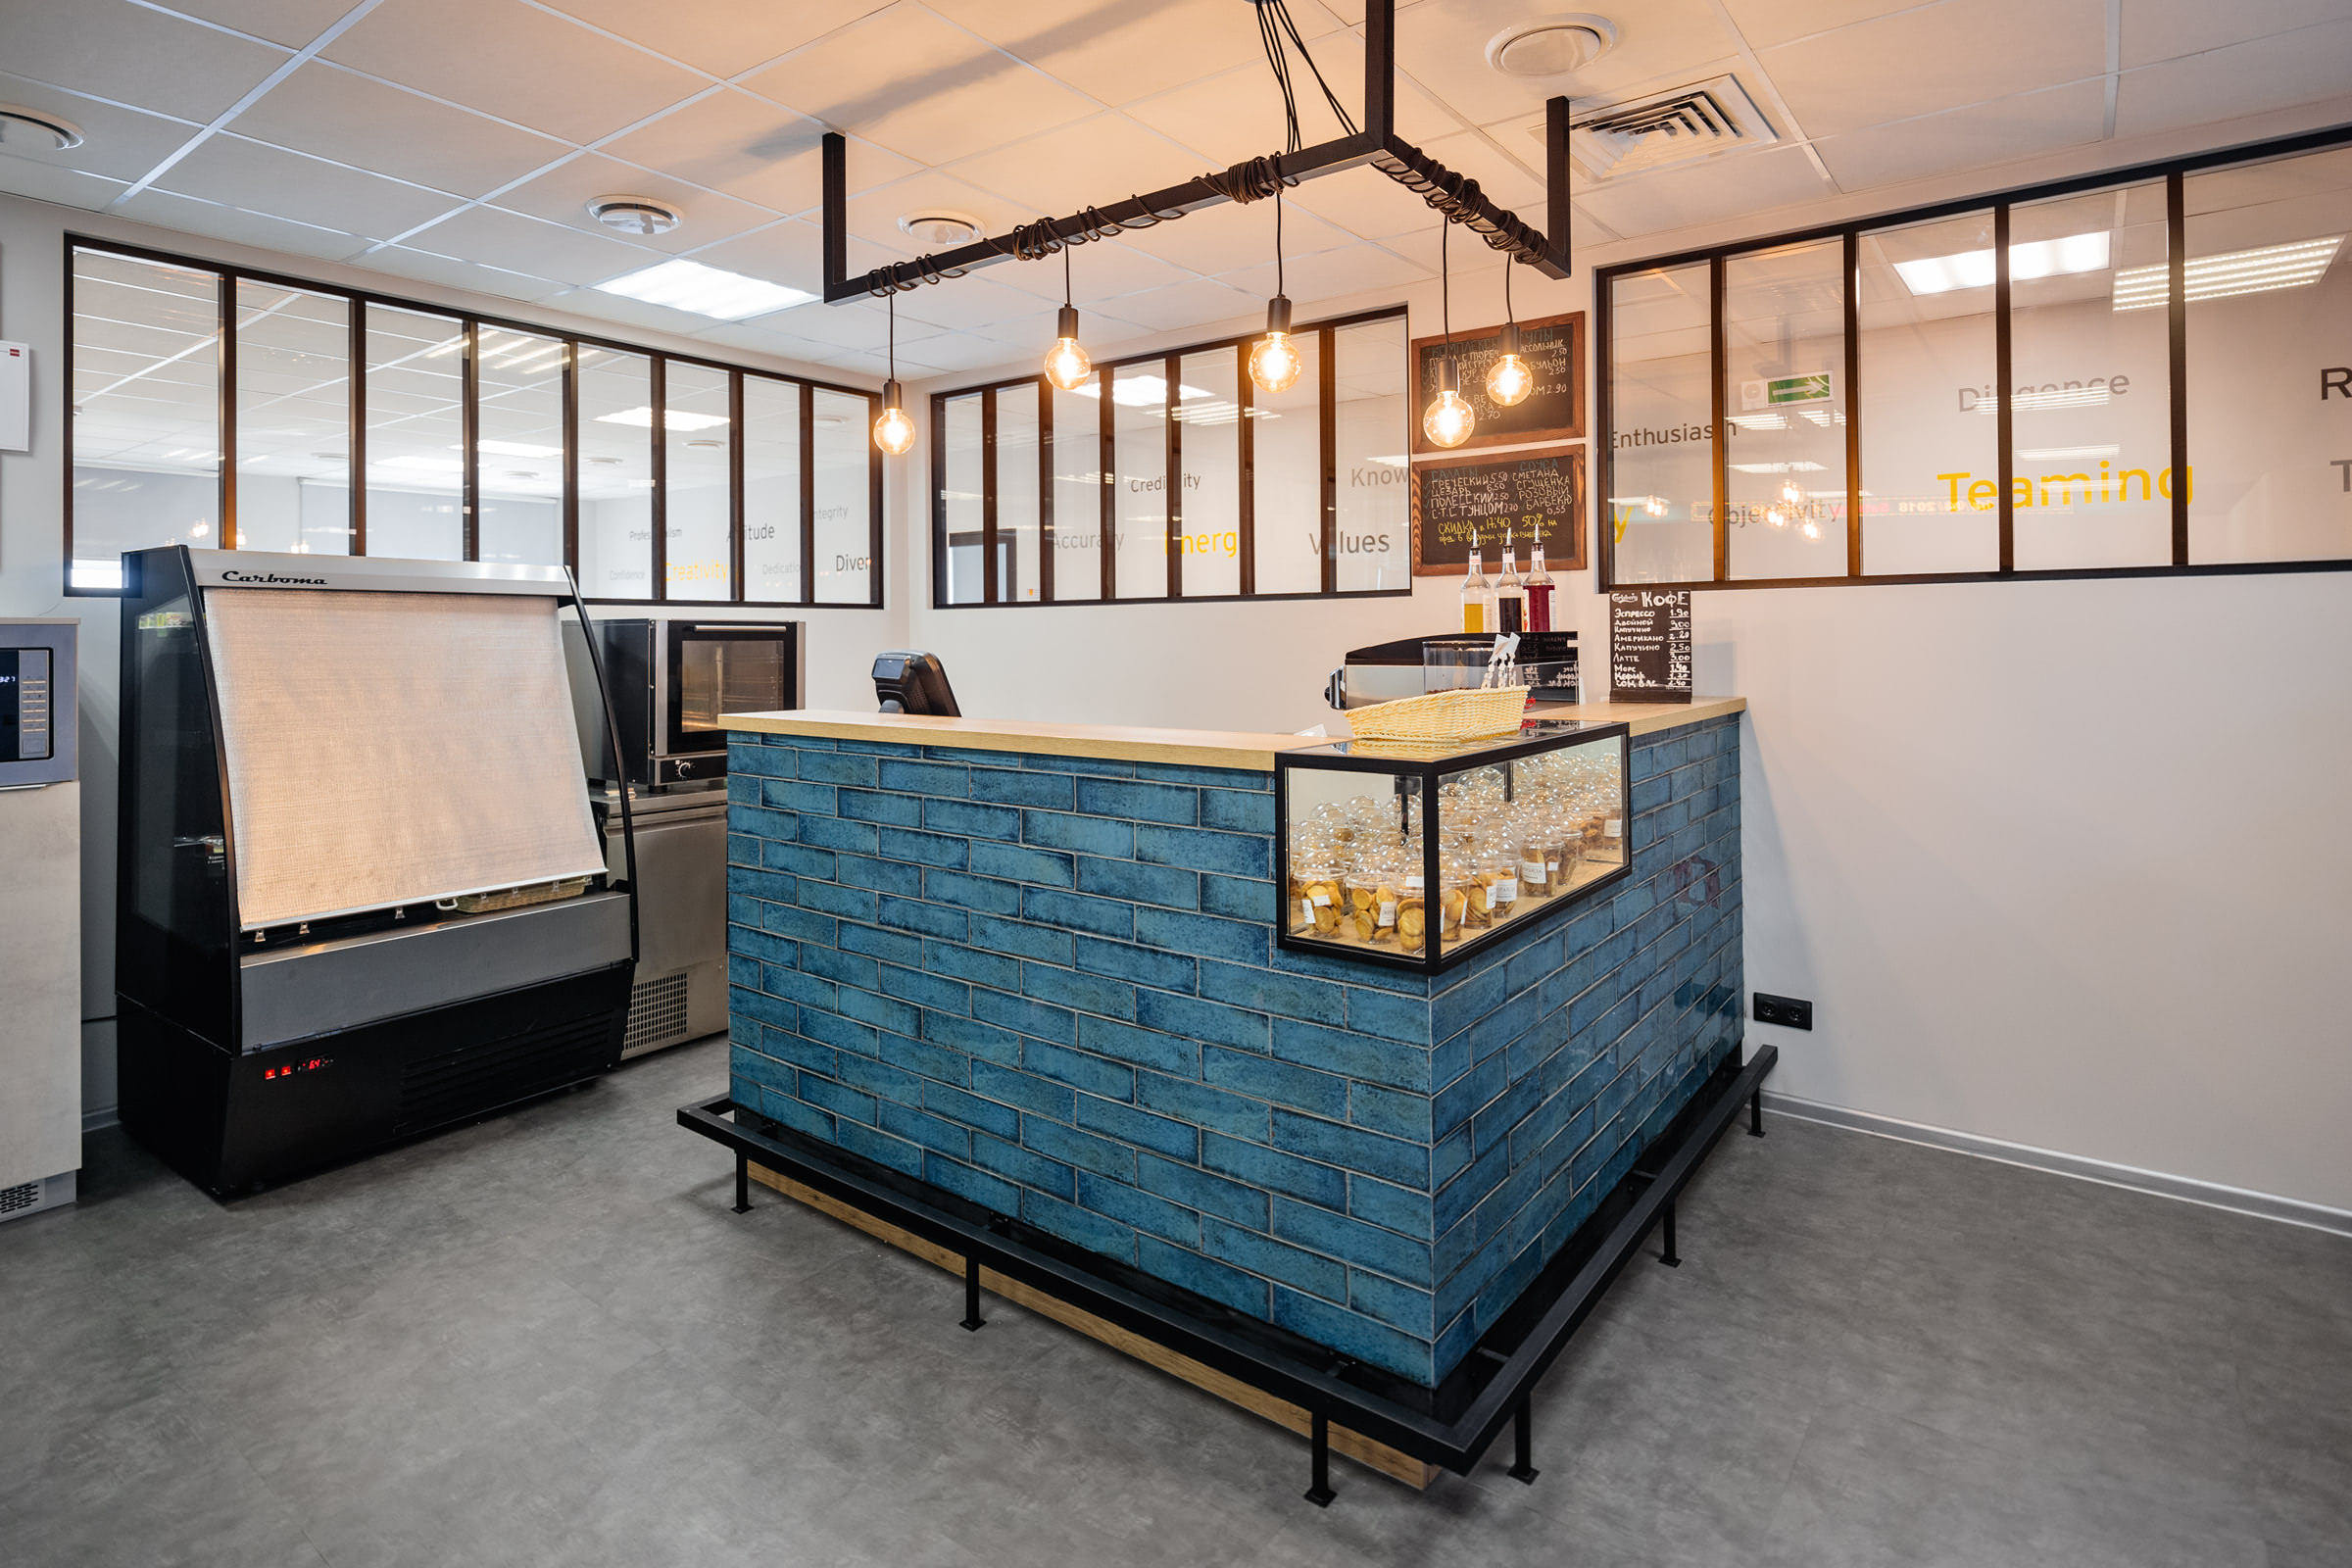 Интерьерное фото барной стойки и кафе с декоративным освещением в современном офисе консалтинговой компании